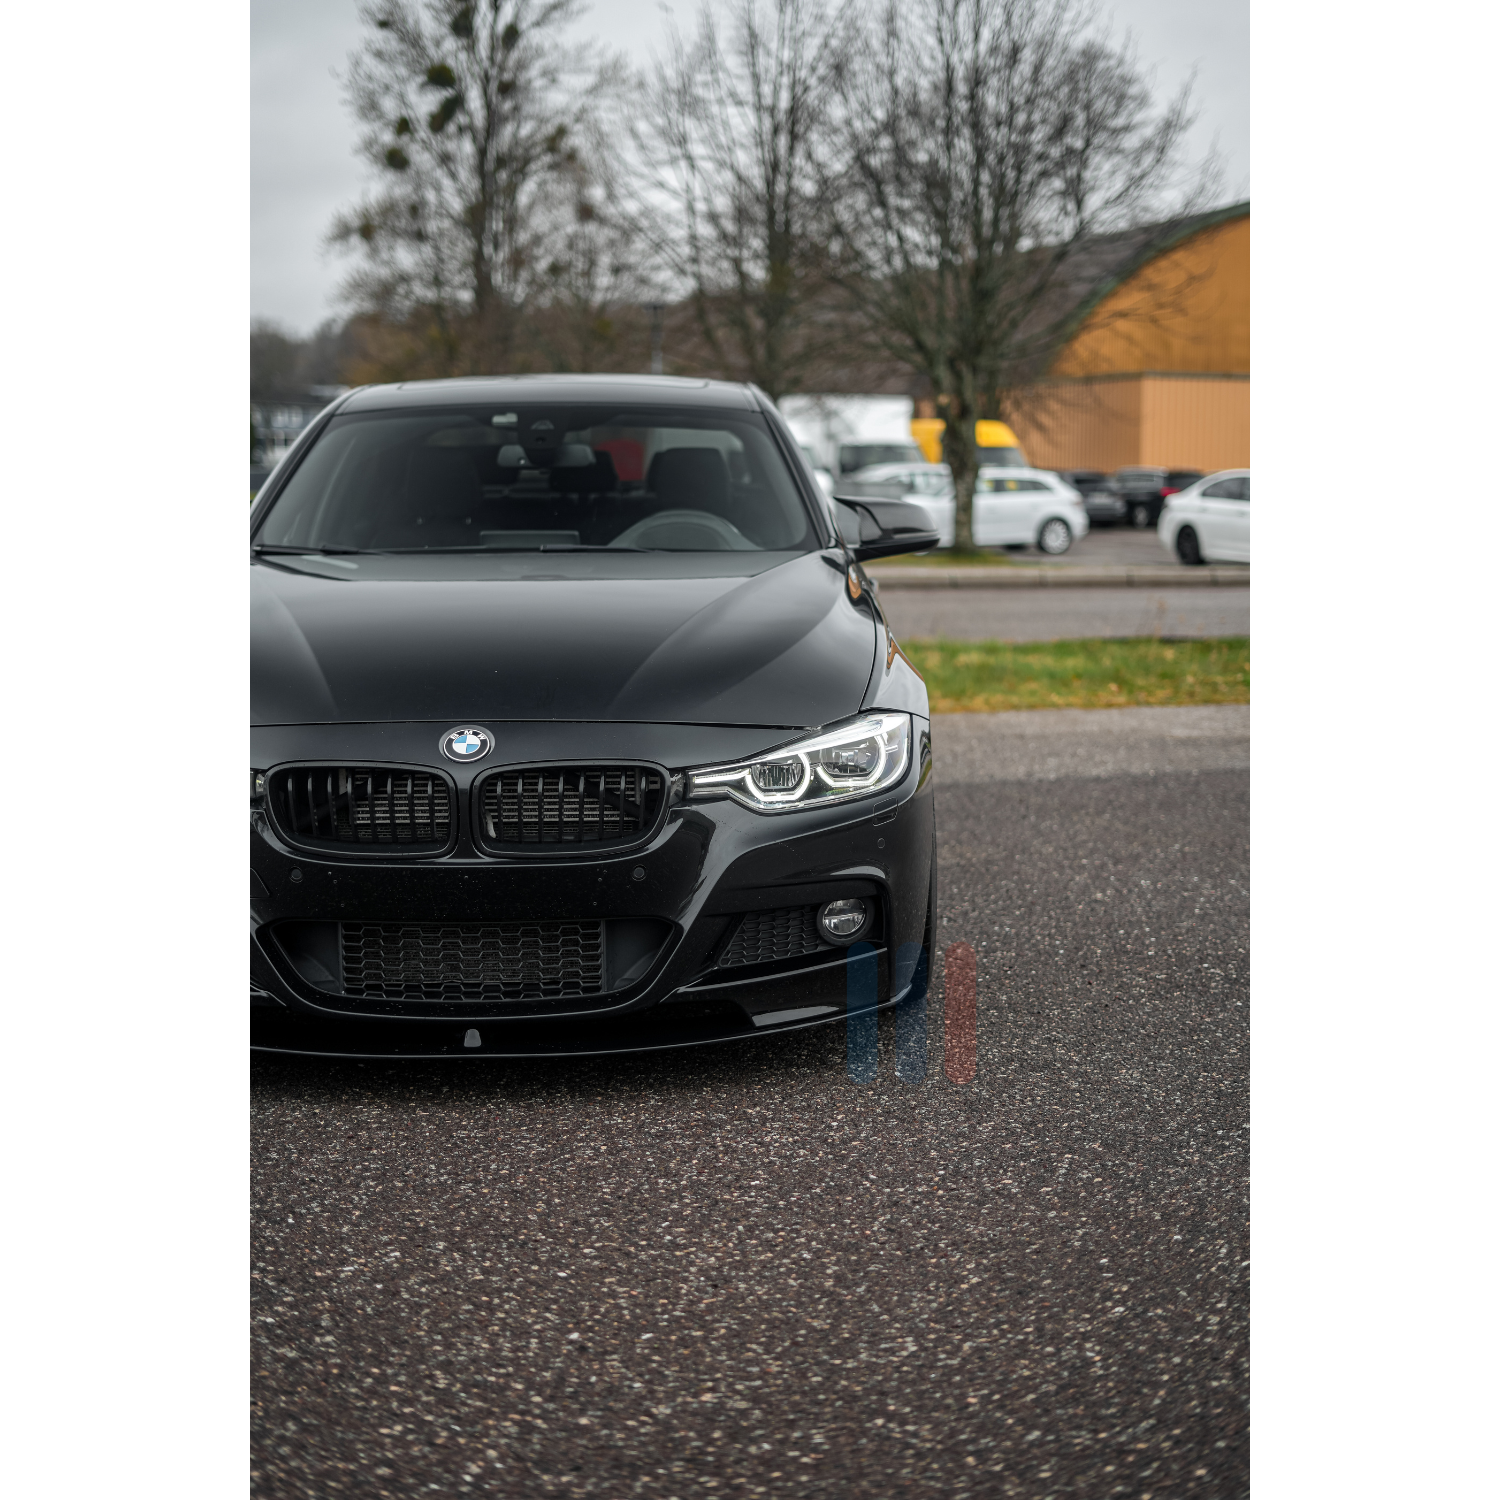 BMW F30 M-Performance Splitterkit